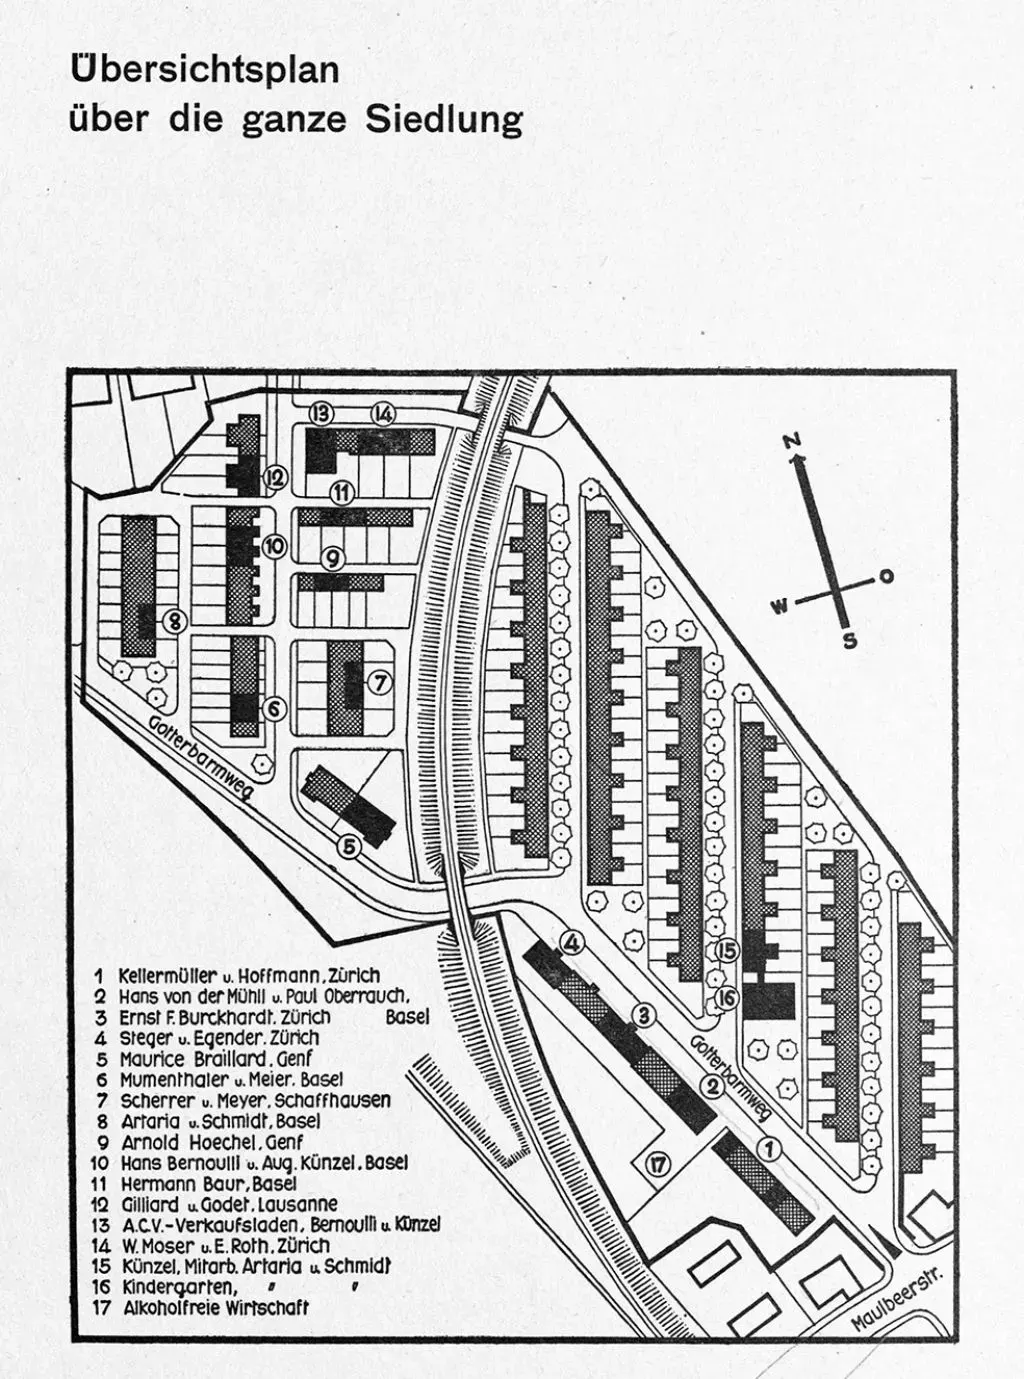 Übersichtsplan zur Ausstellungs-Siedlung während der Woba, 1930